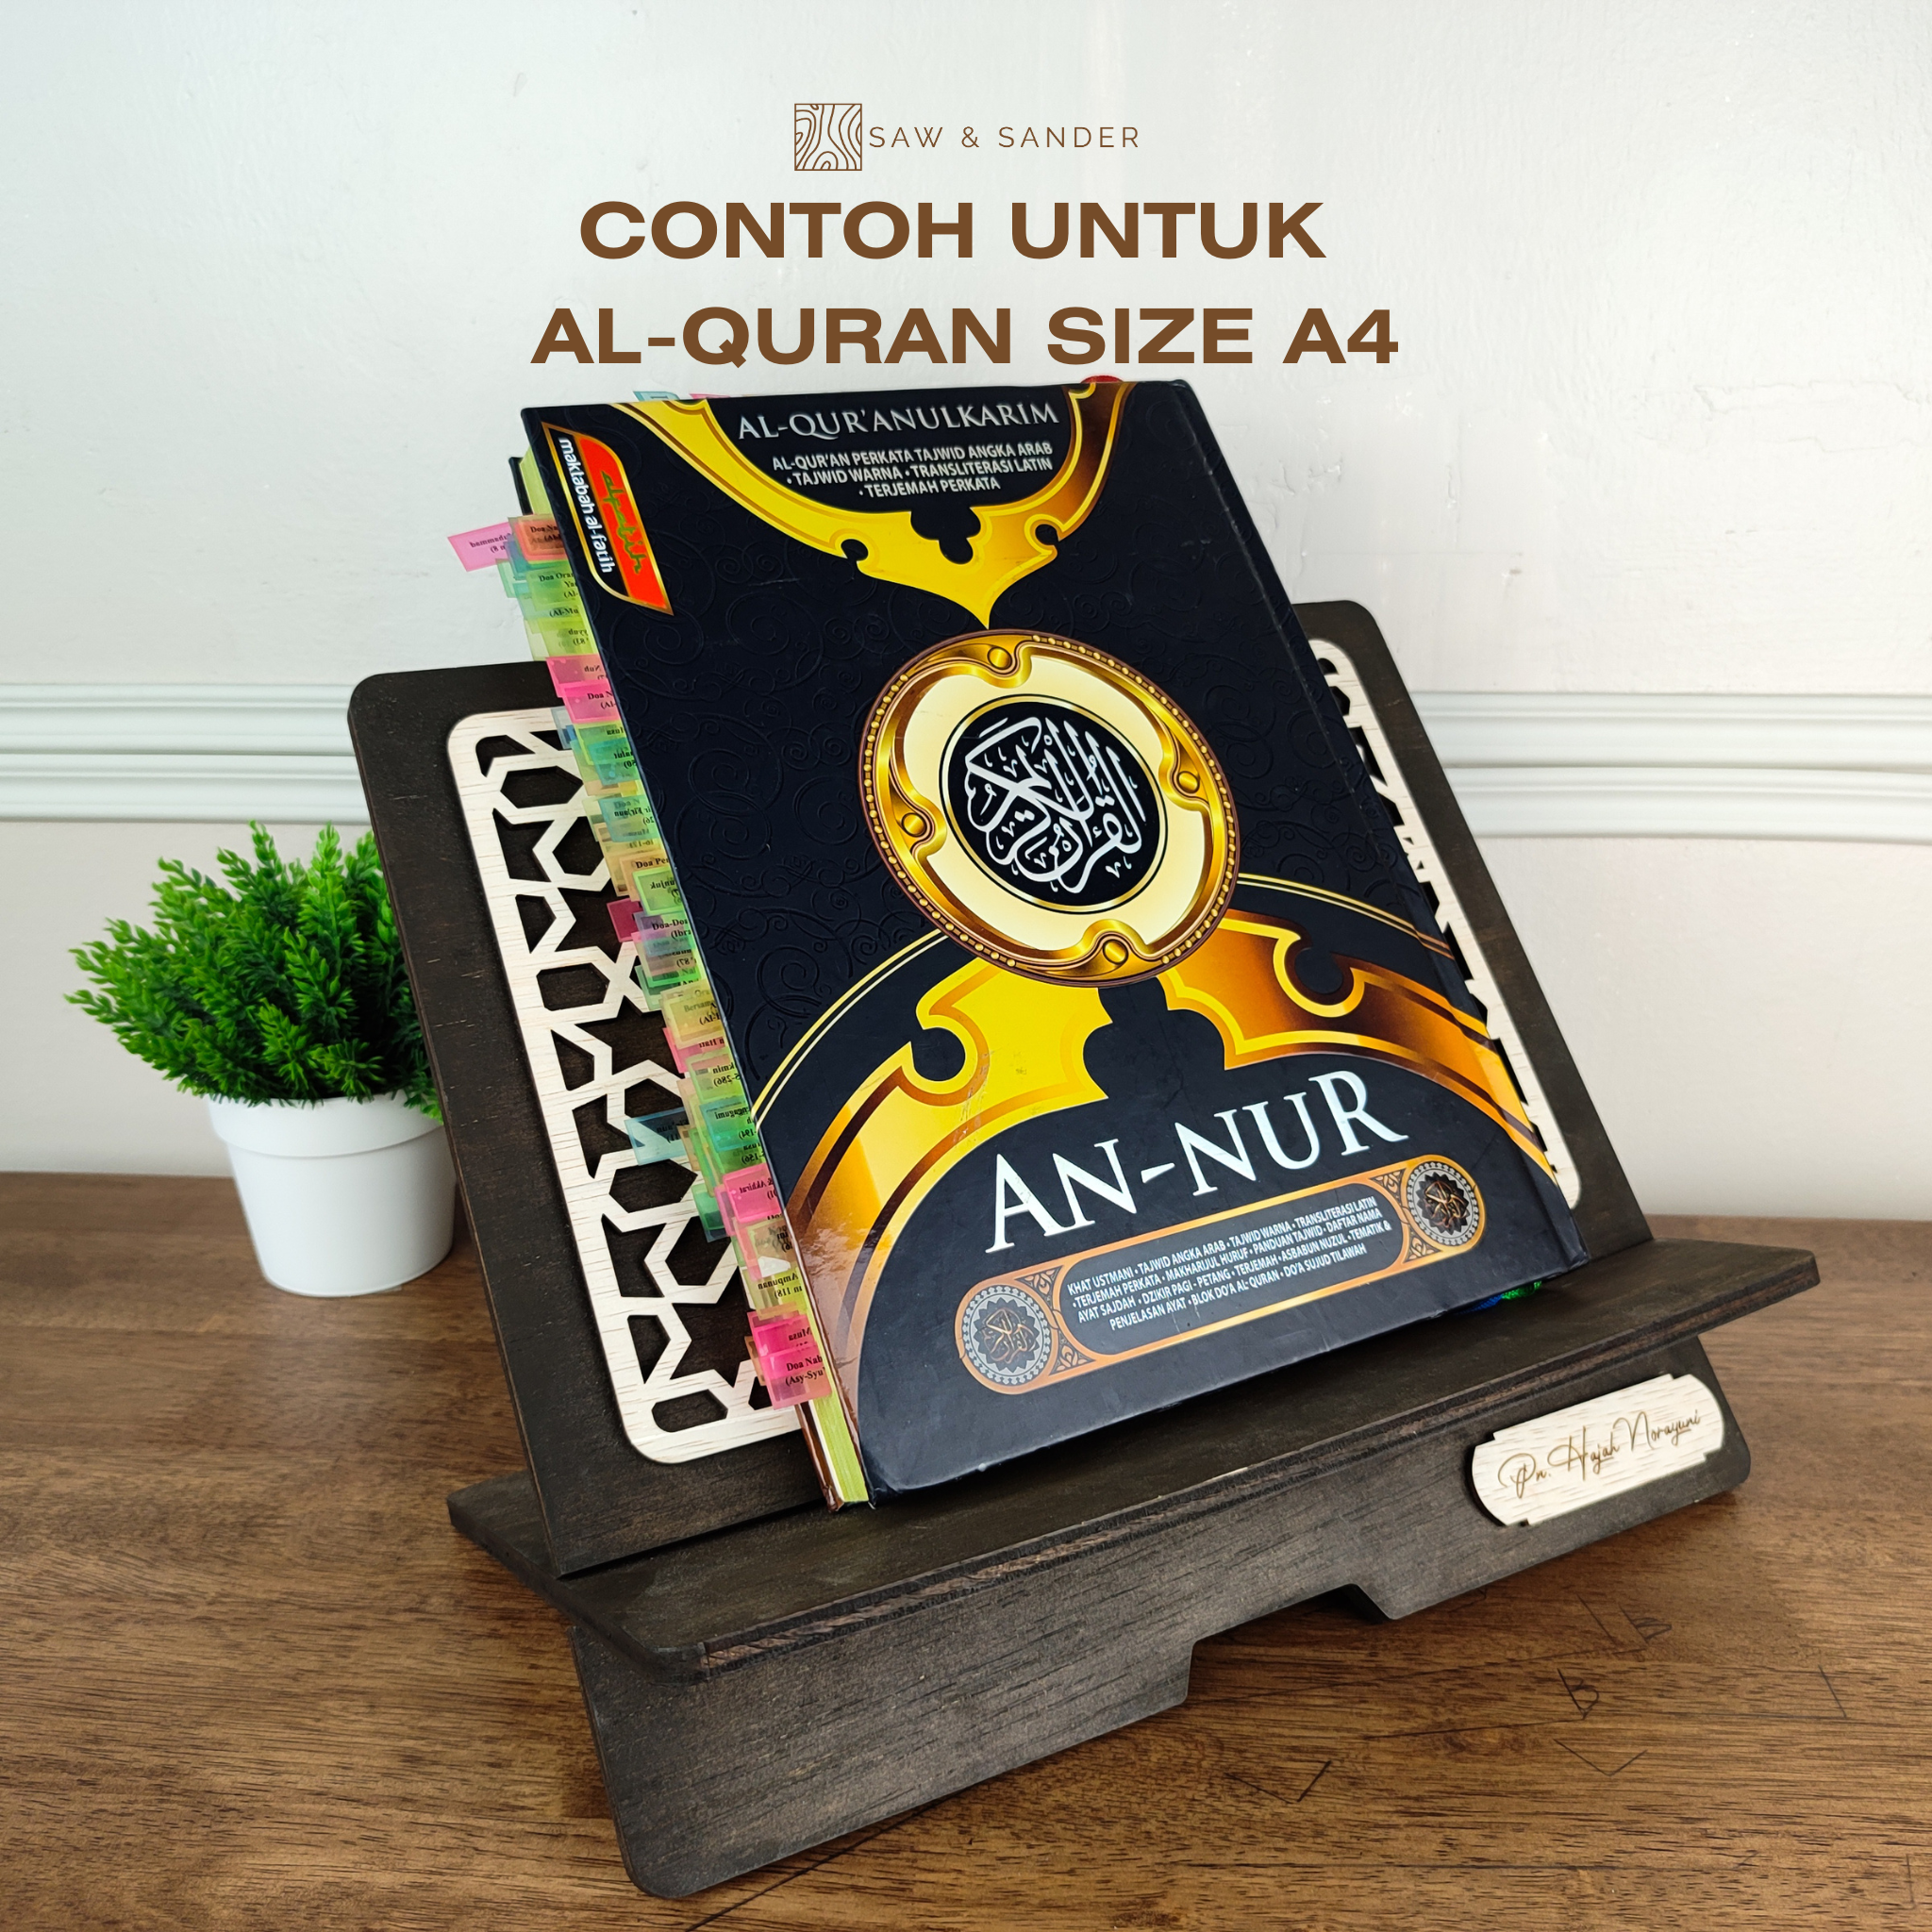 Quran size A4